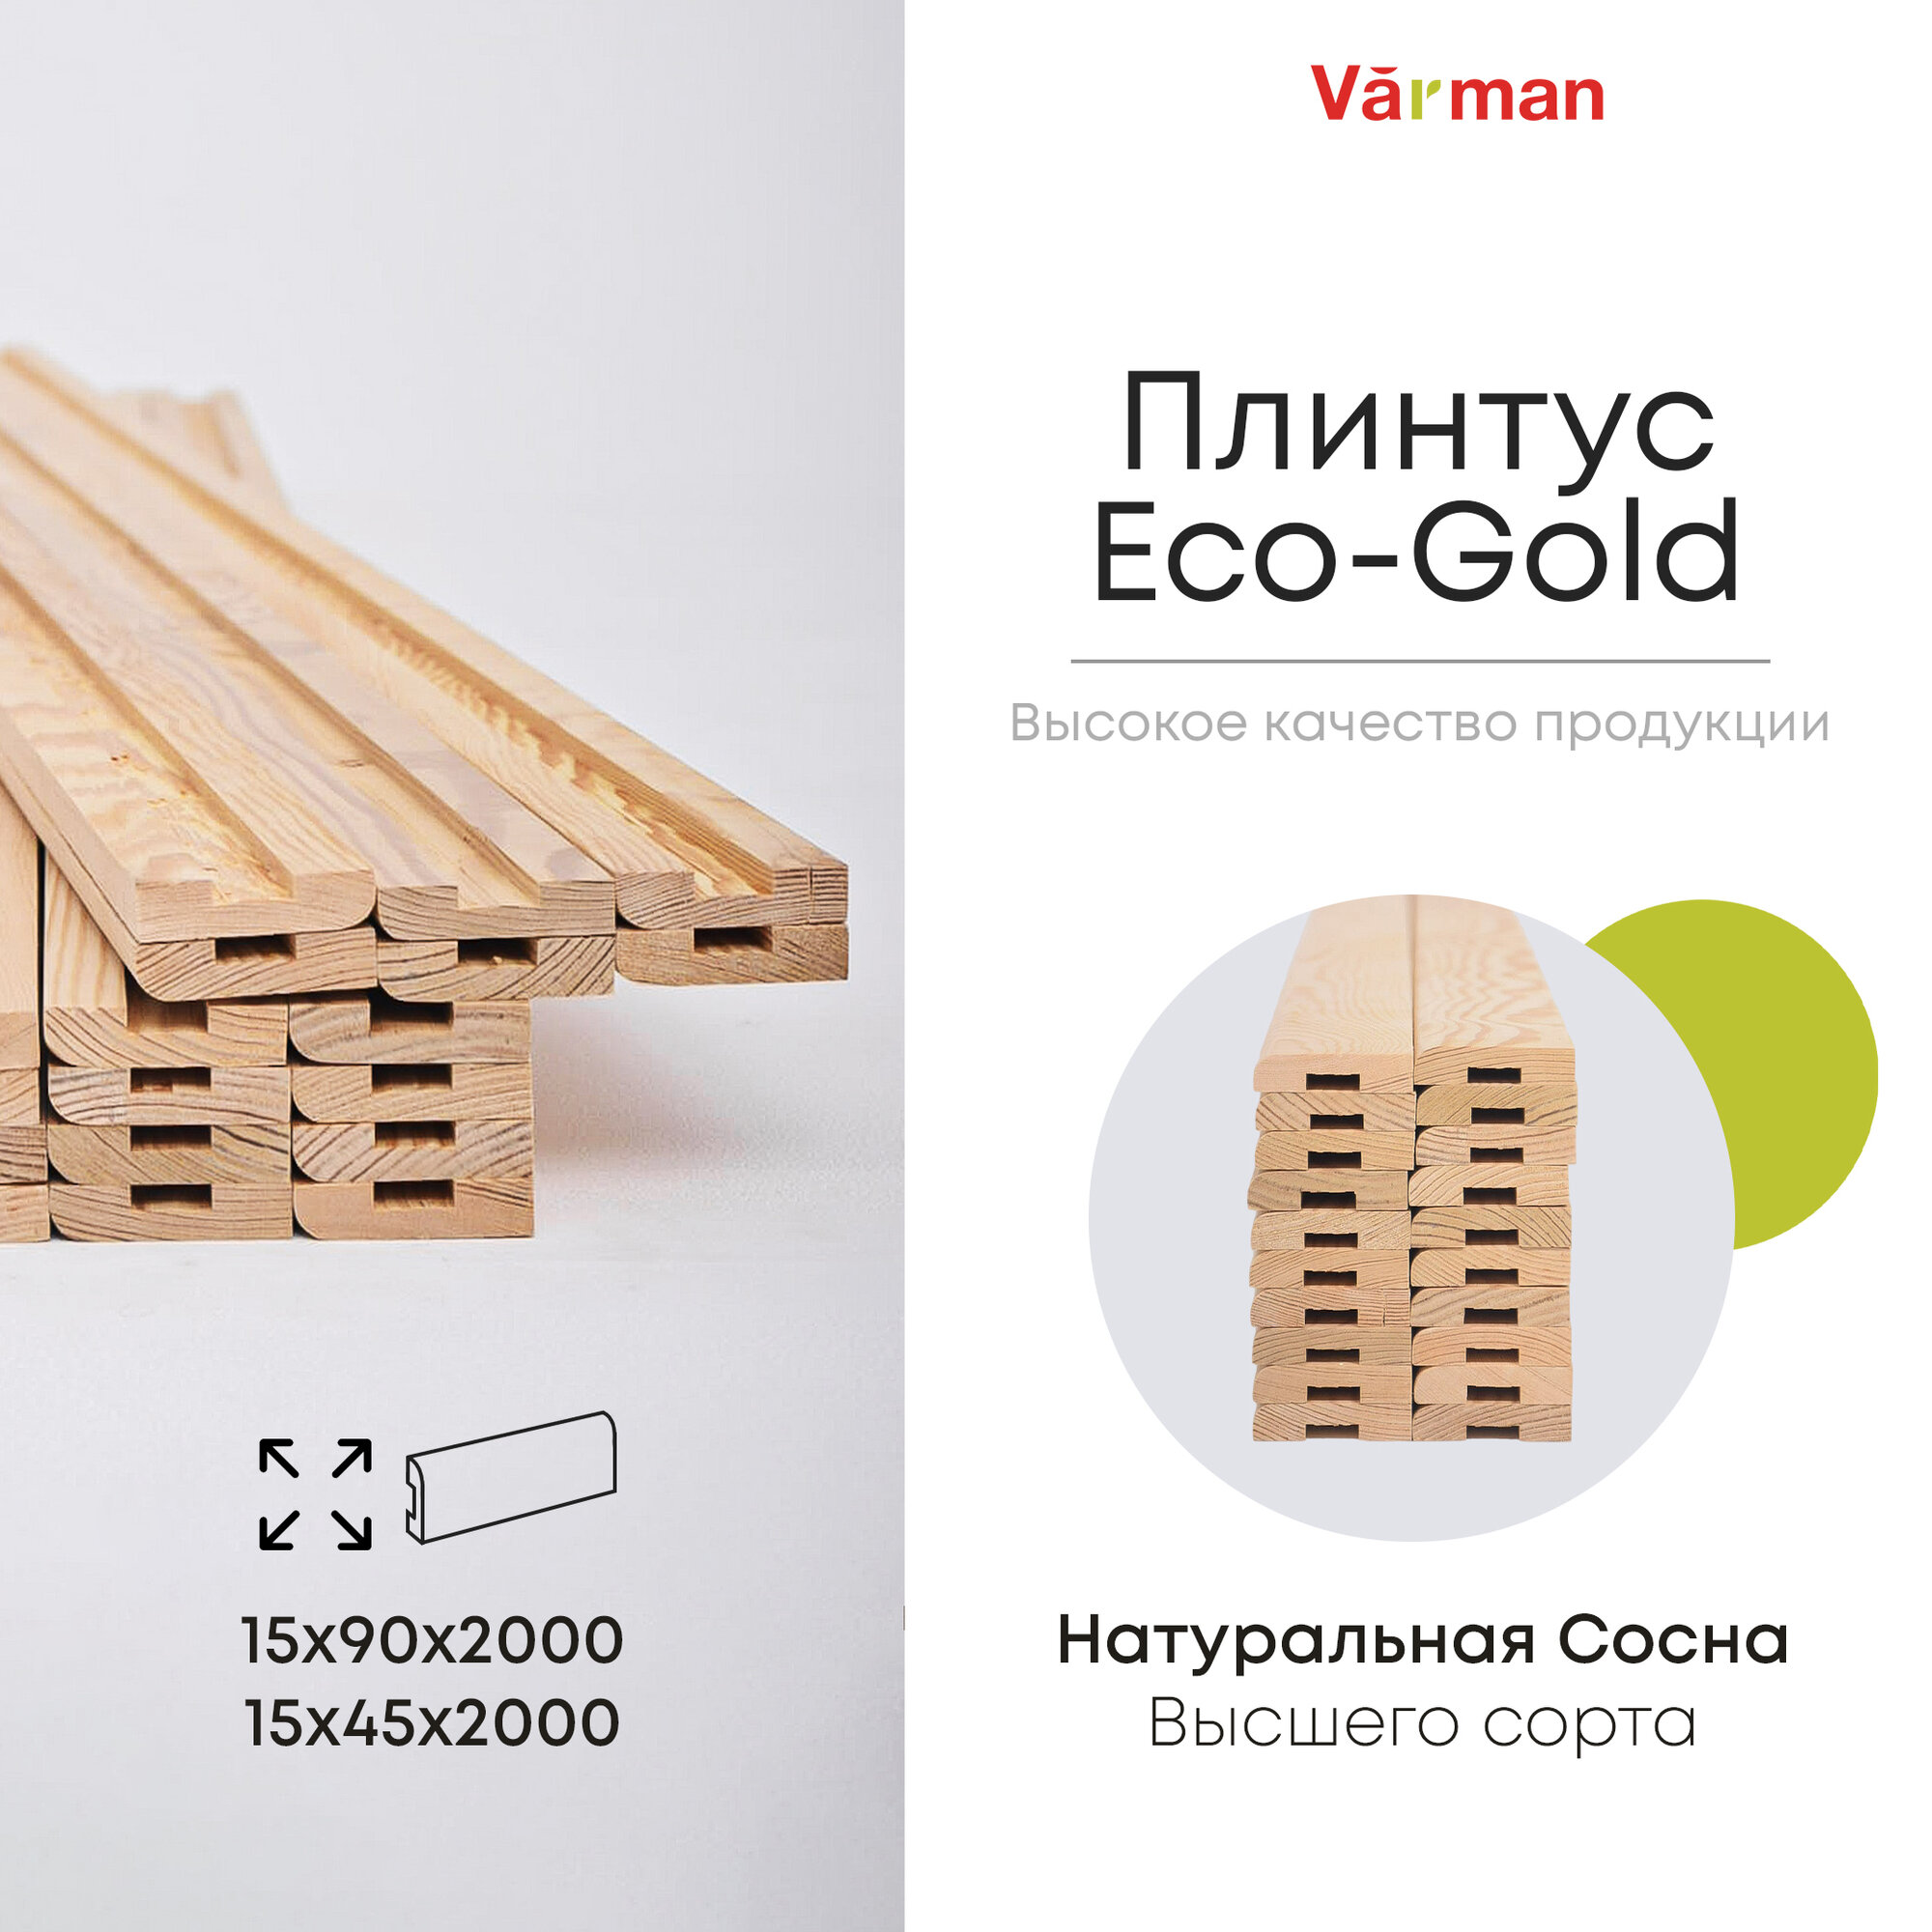 Плинтус Eco-Gold, сорт Высший, деревянный 15х90х2000 (10 шт), натуральный, Varman.pro